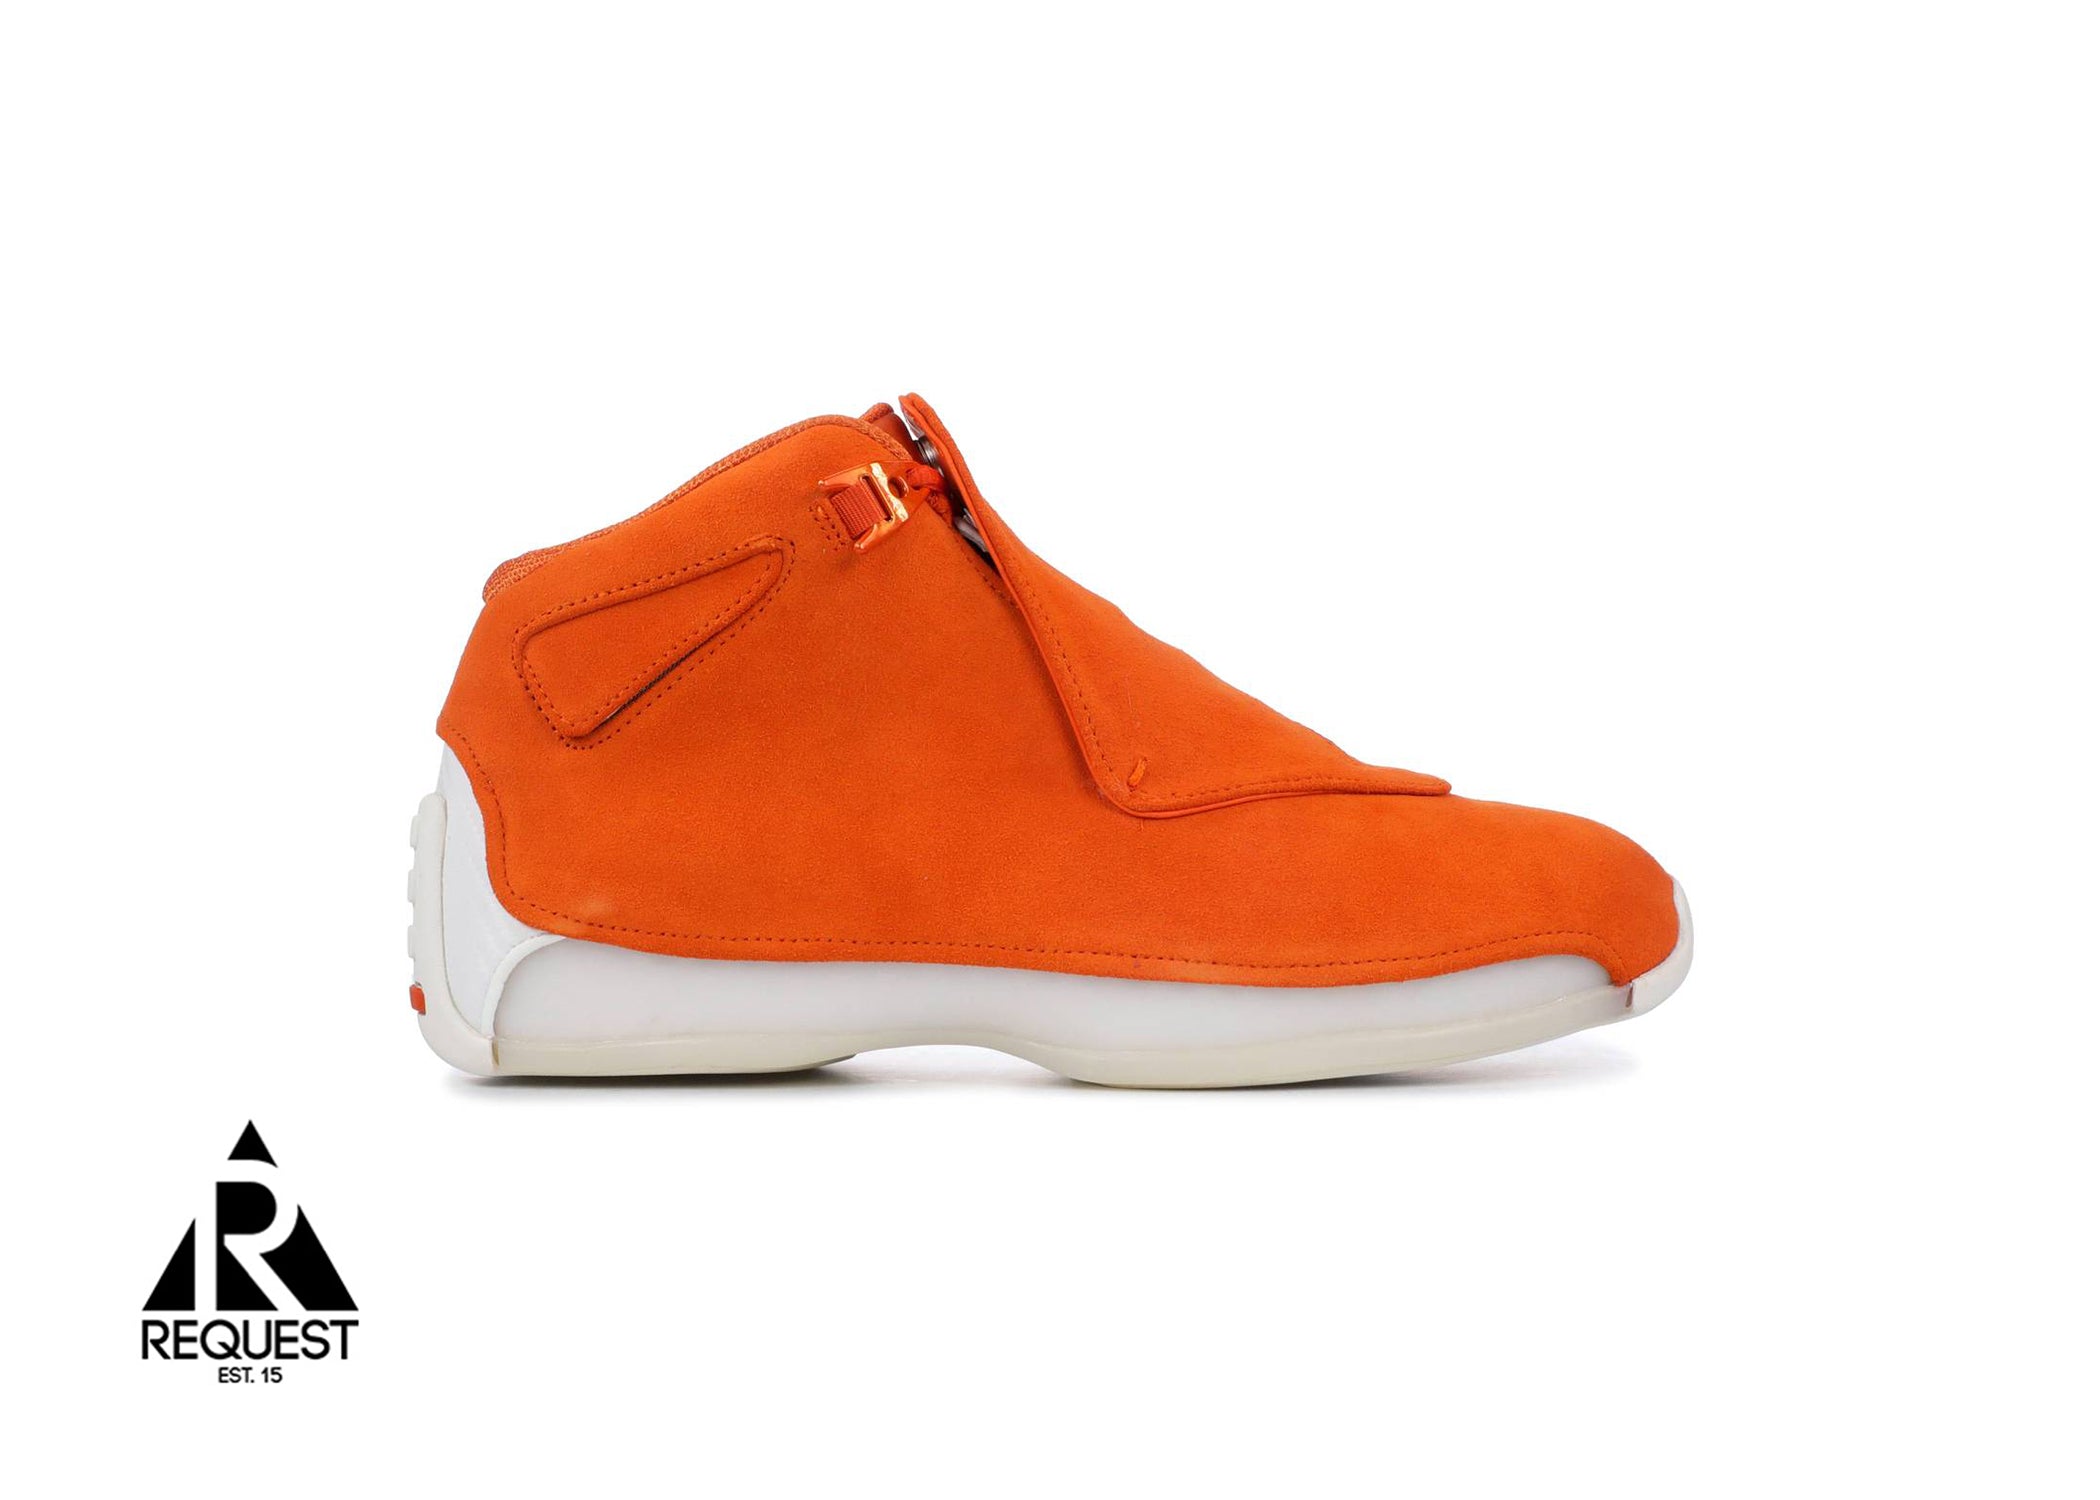 Air Jordan 18 Retro “Orange Suede”